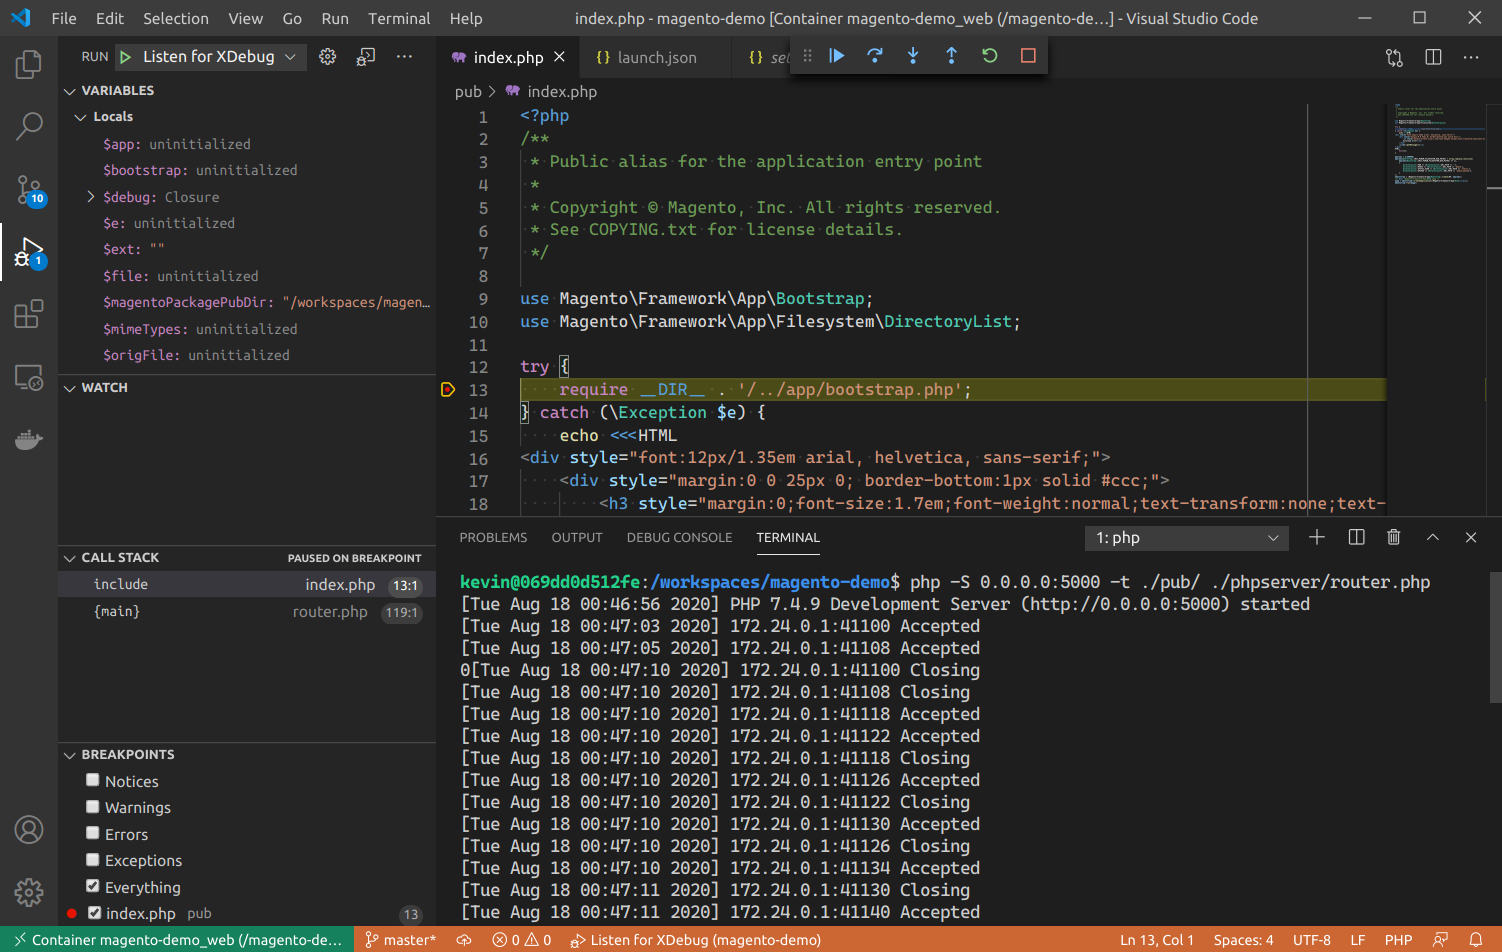 Setting up debugging in VS Code